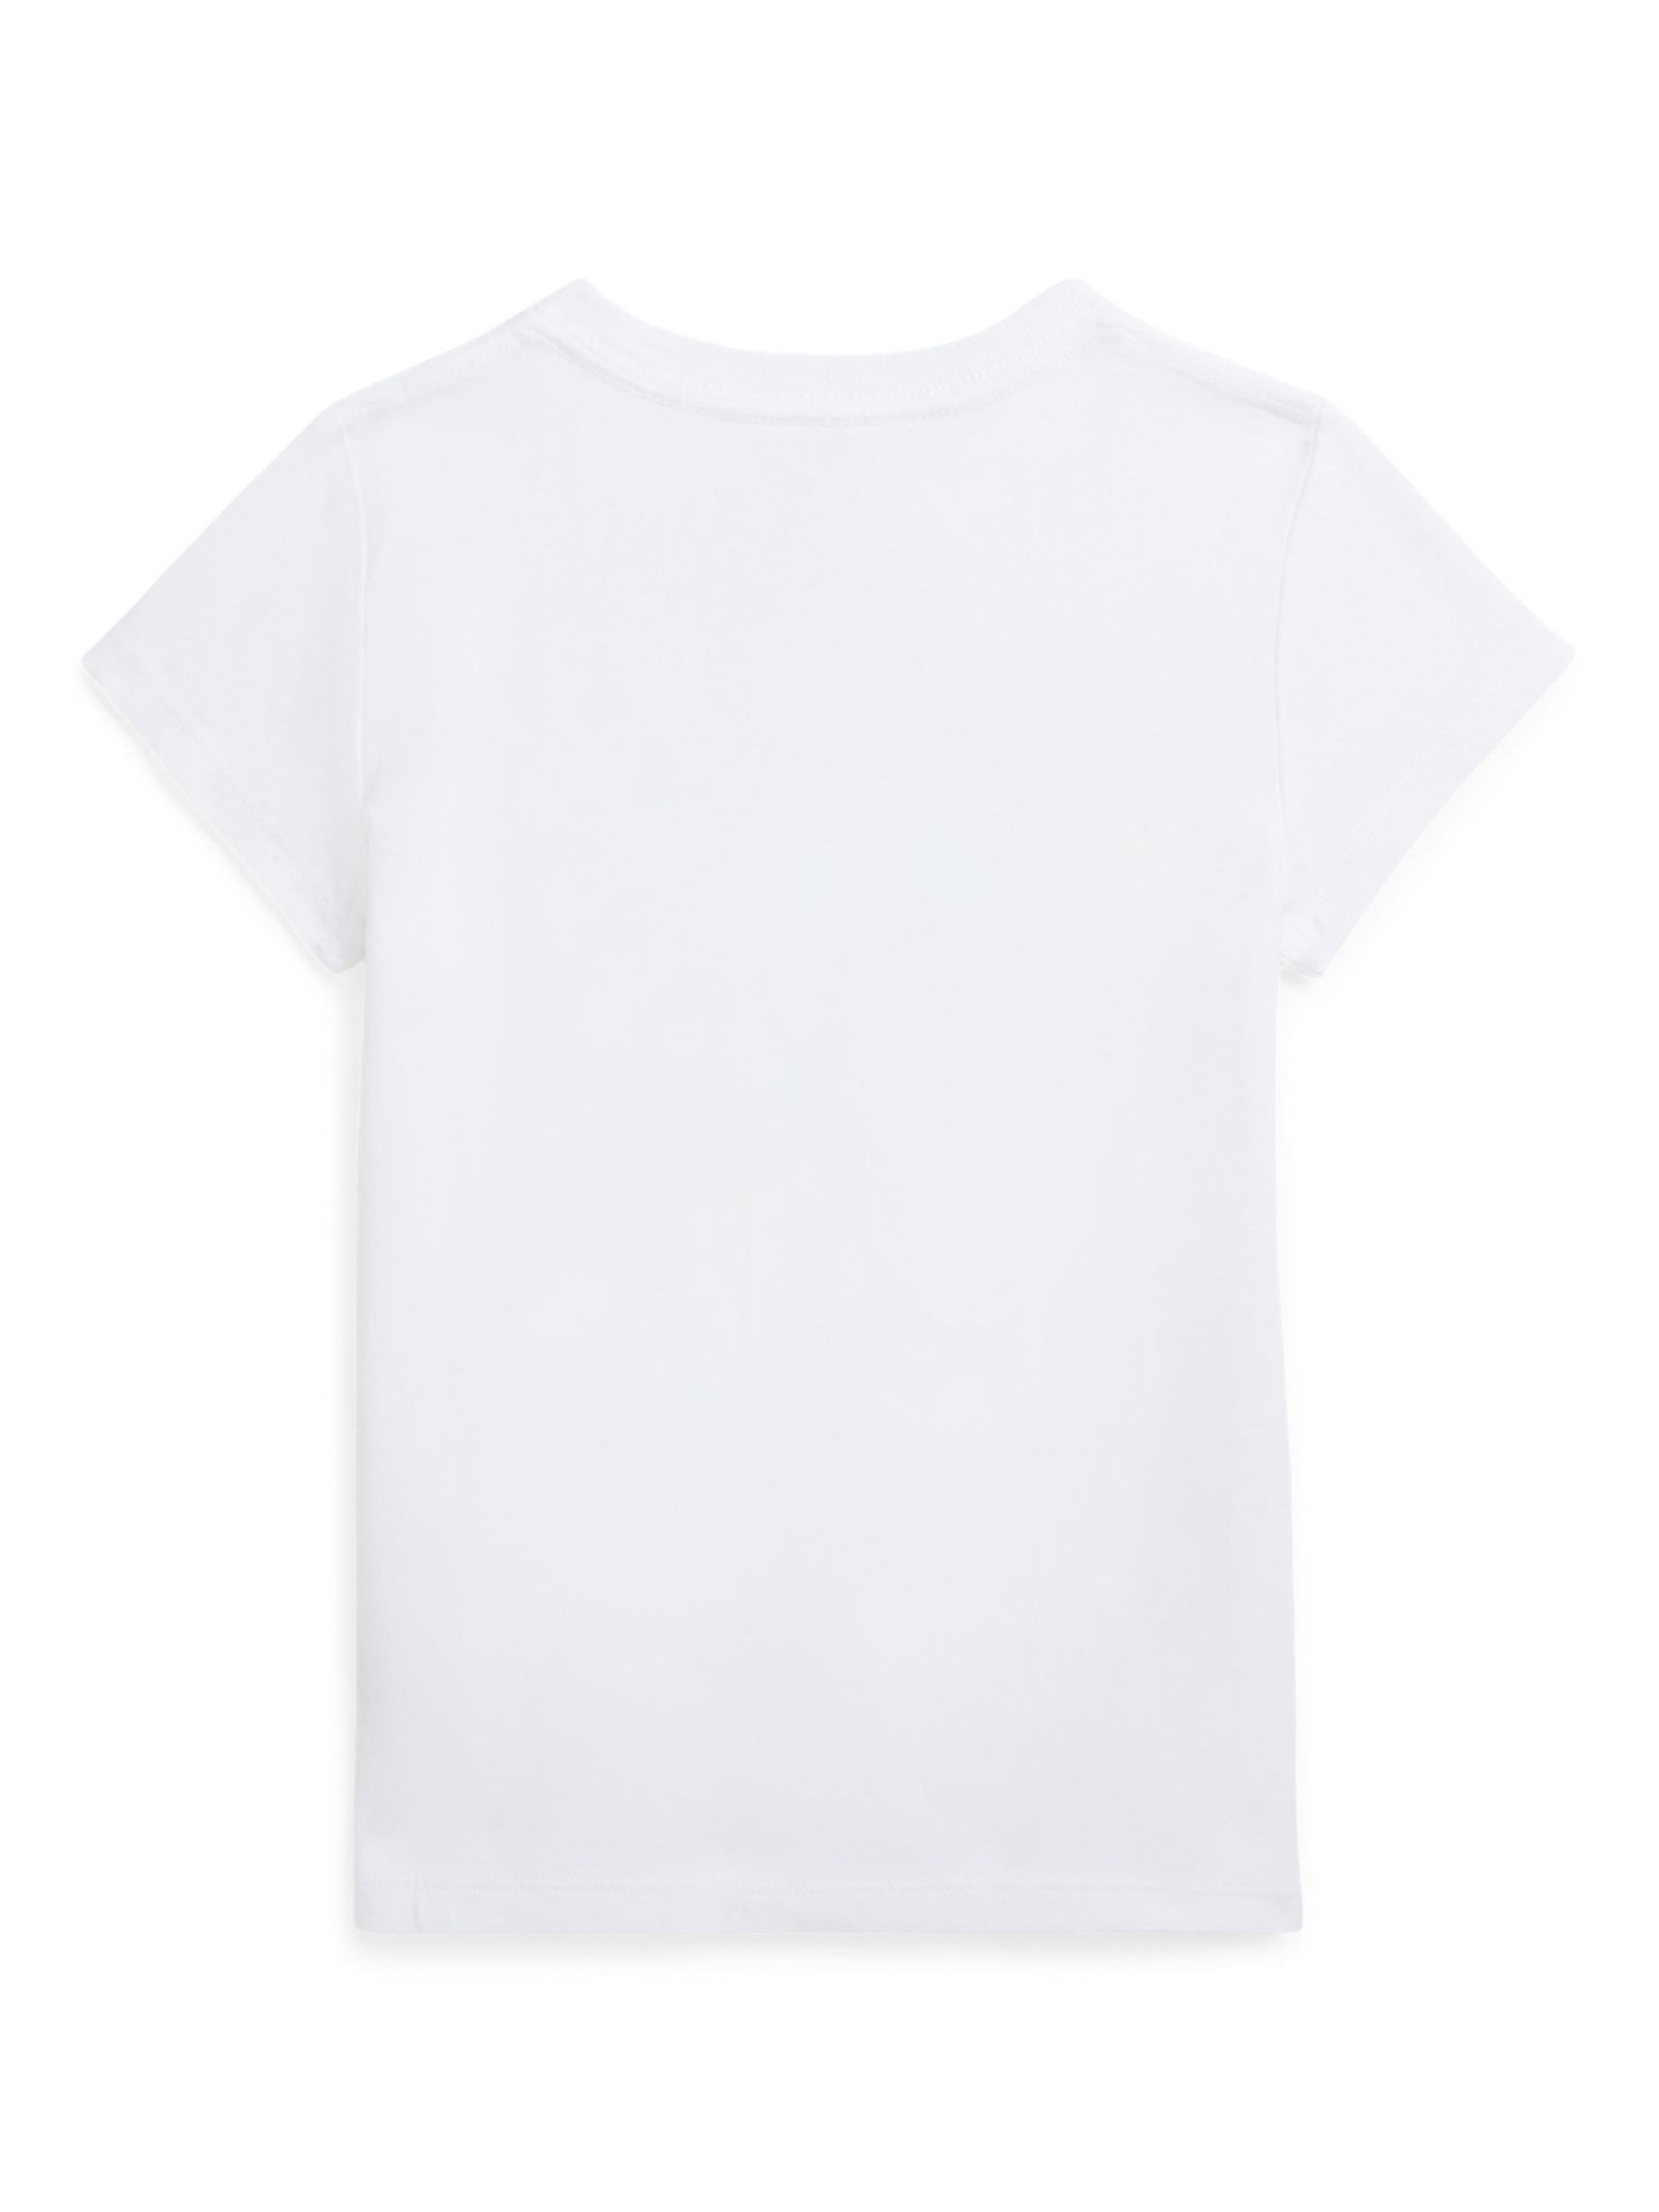 Ralph Lauren Kids' Parisian Yorkie Dog Graphic T-Shirt, White, 3 years